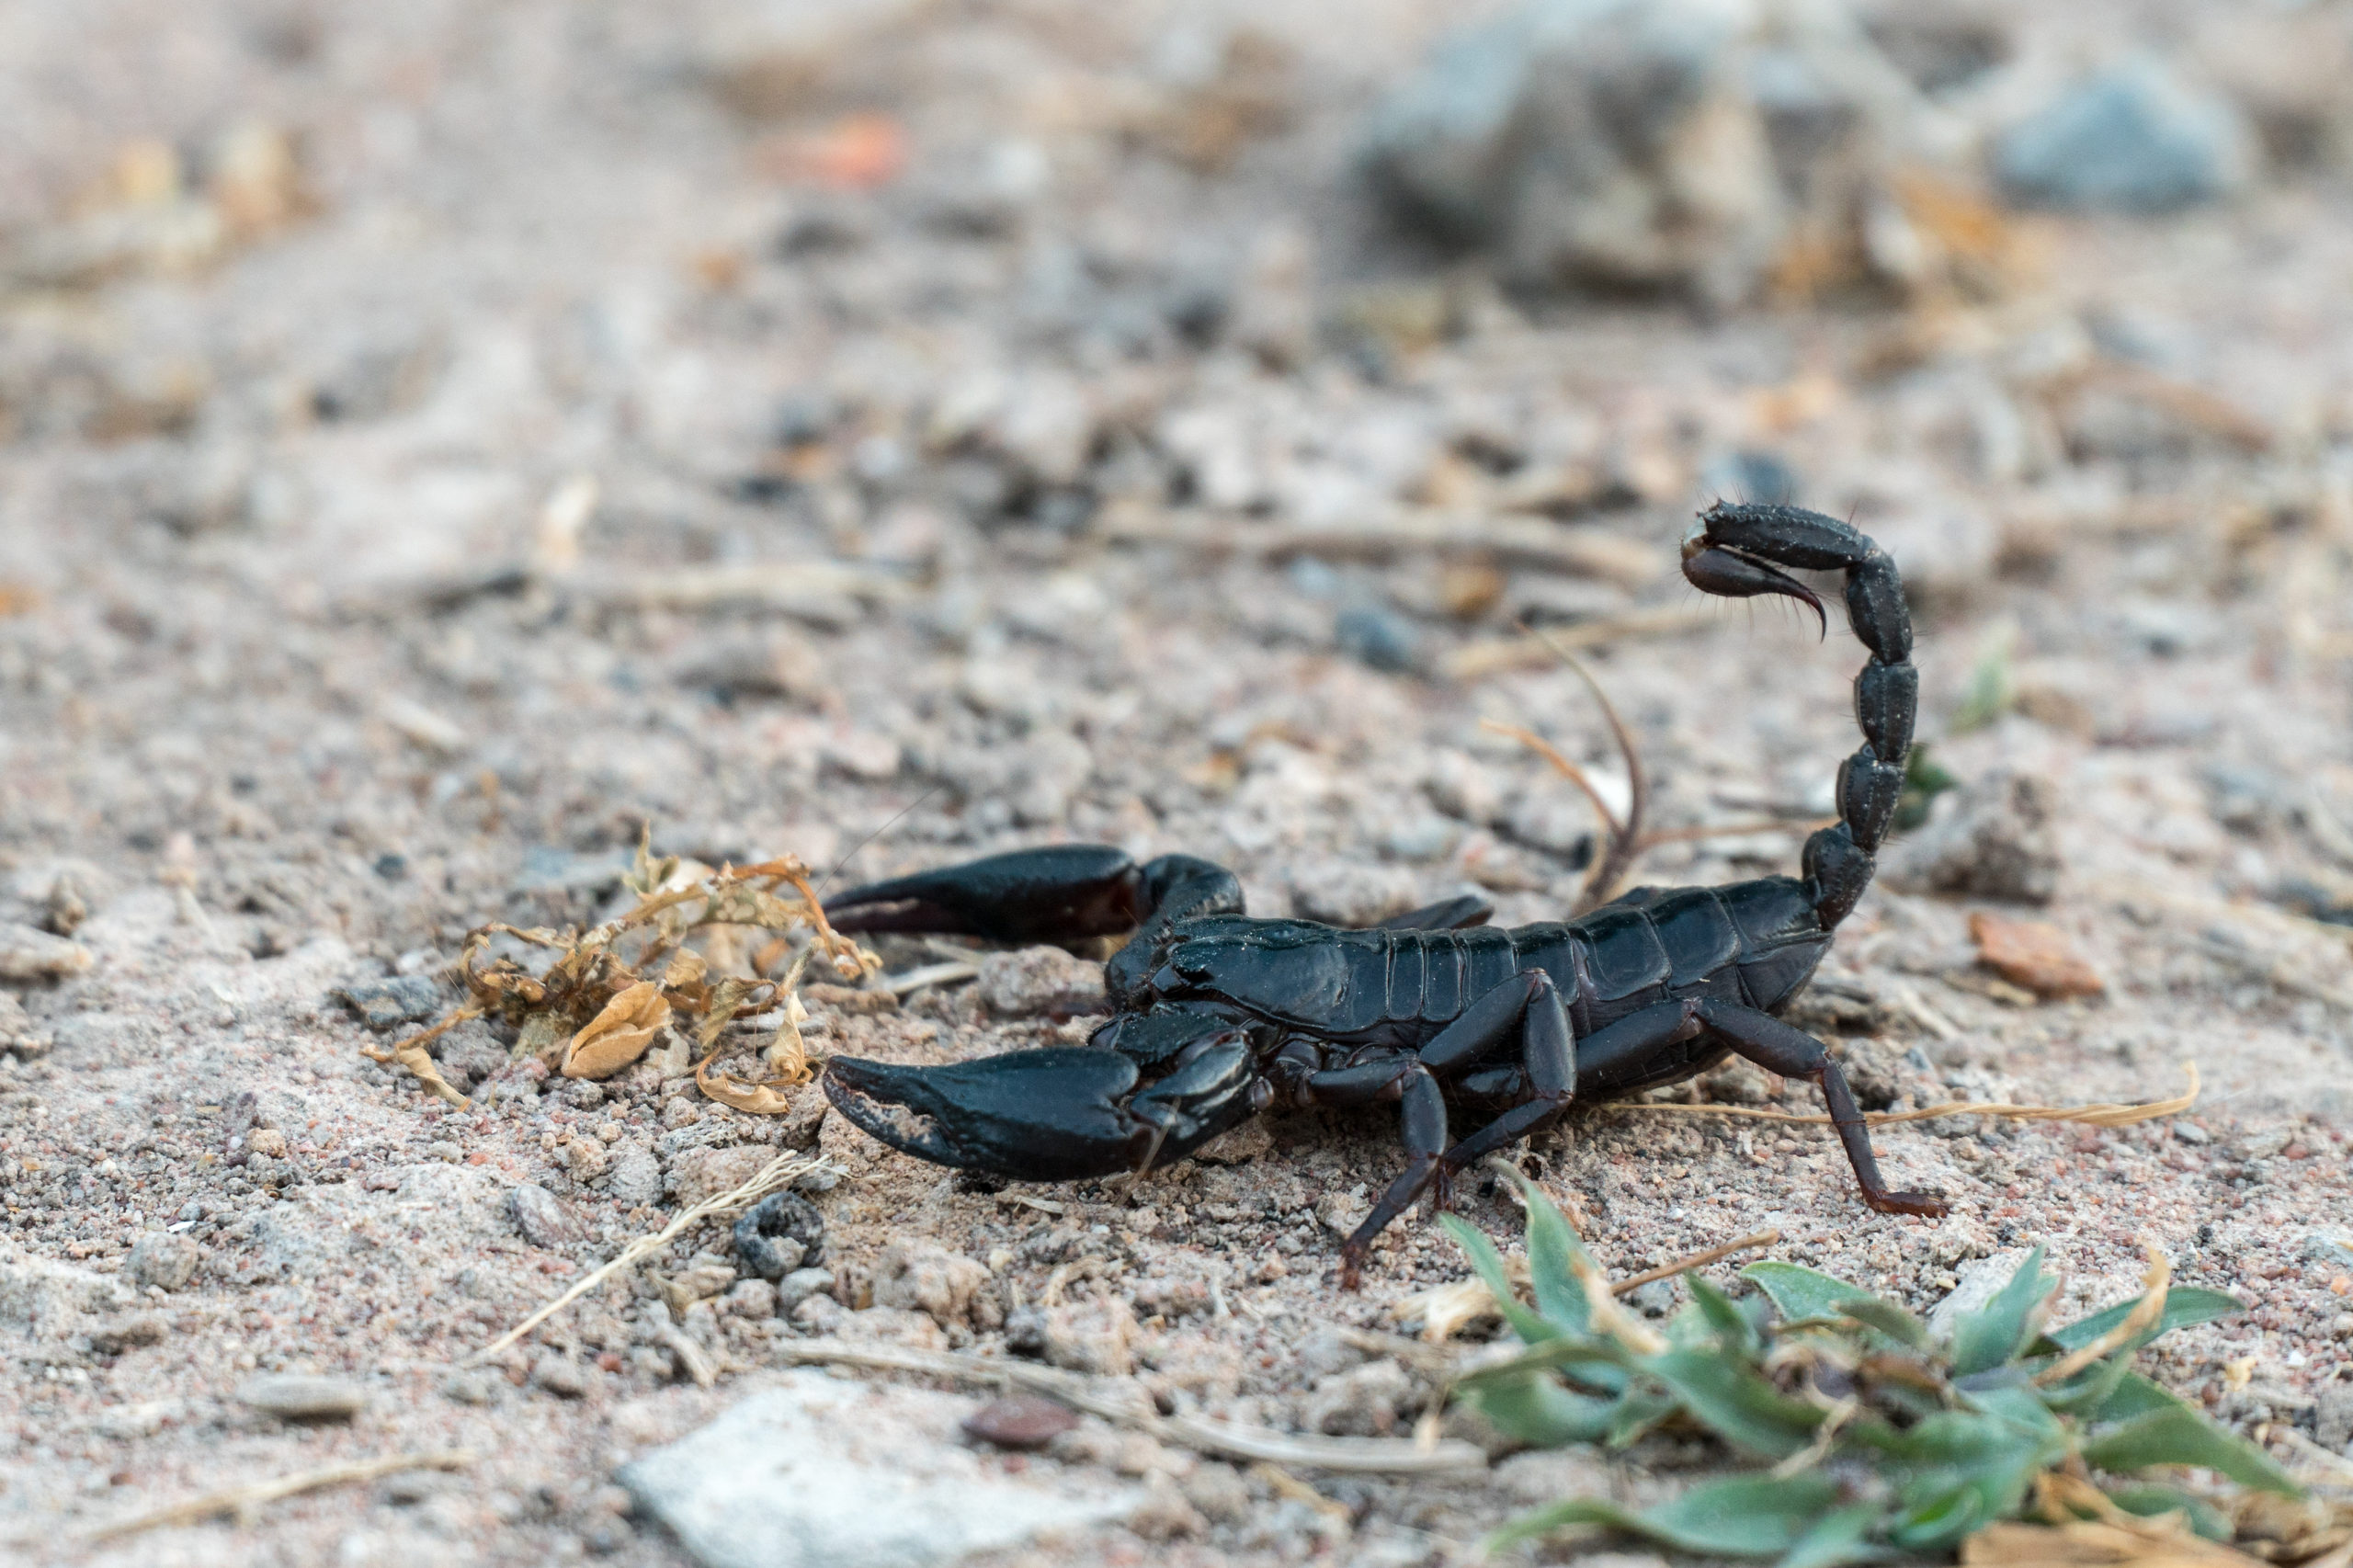 Scorpion venom yields novel alkaloid